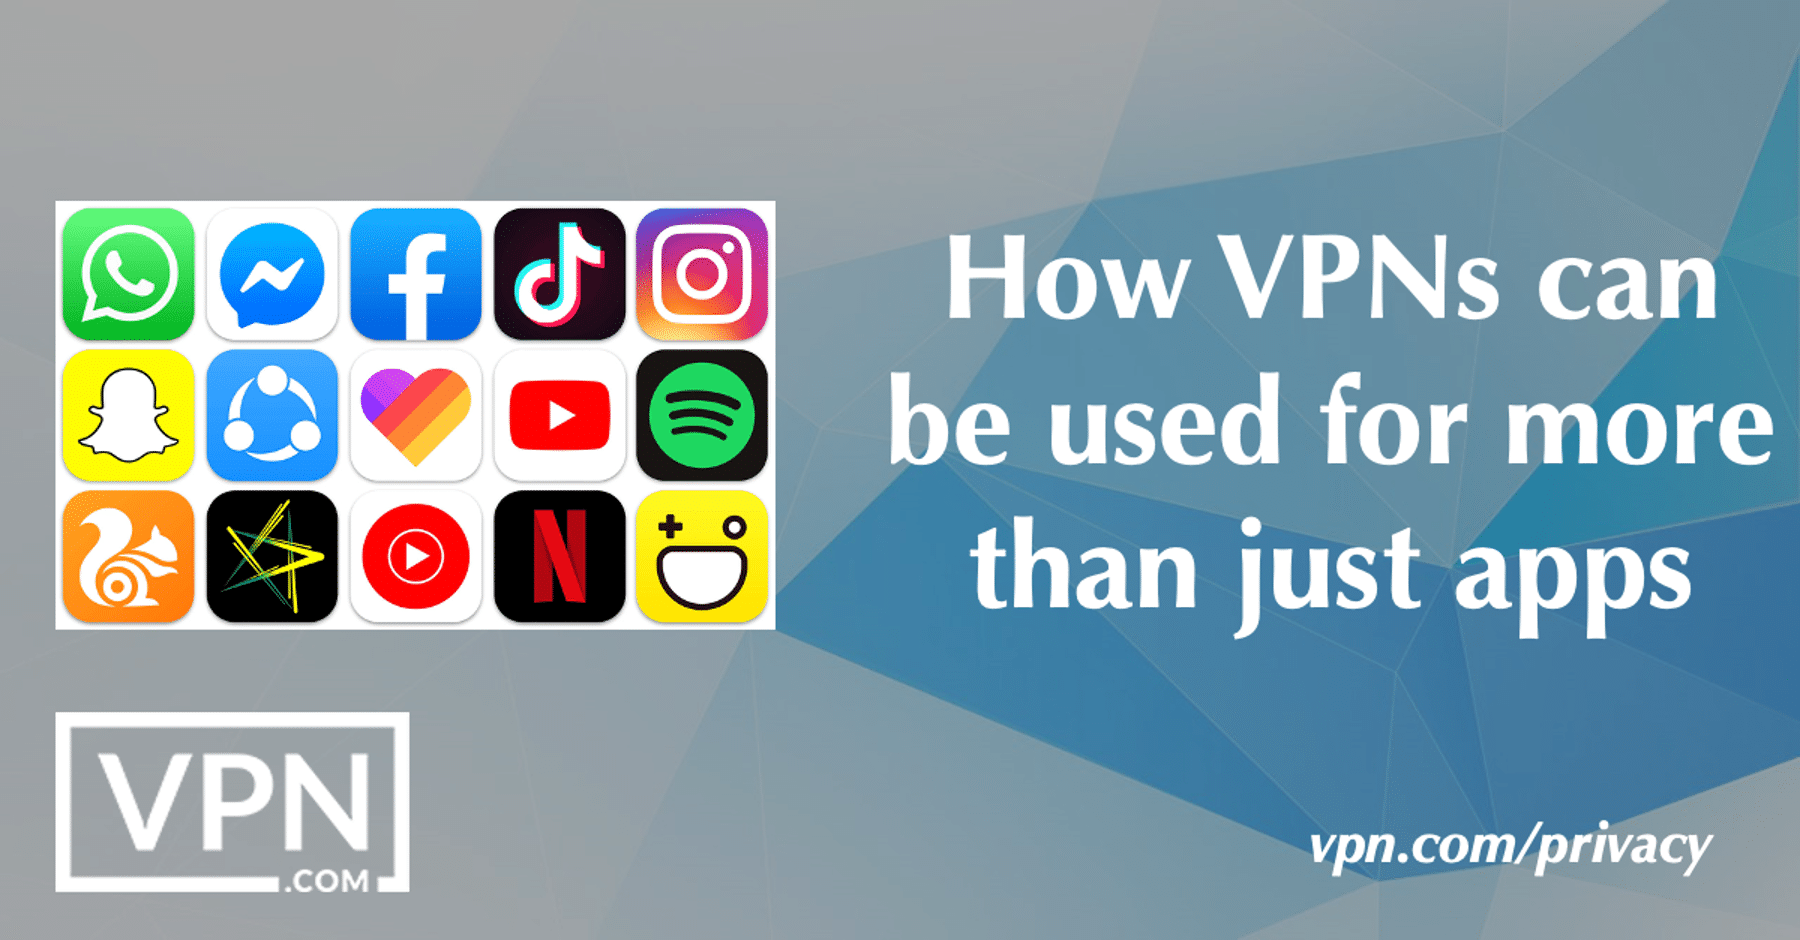 Miten VPN:ää voi käyttää muuhunkin kuin vain sovelluksiin?